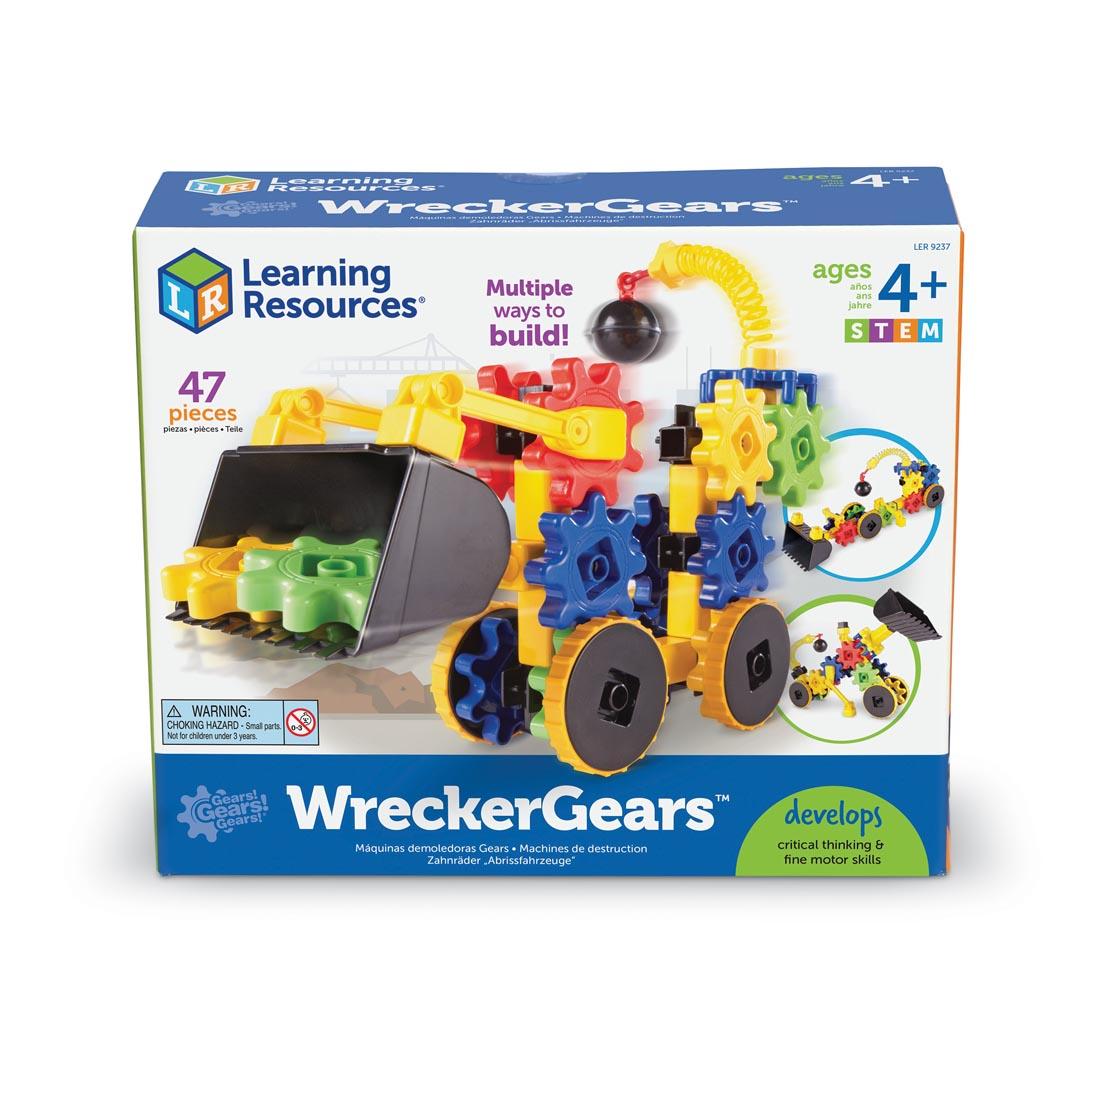 47-piece wrecker gears building set